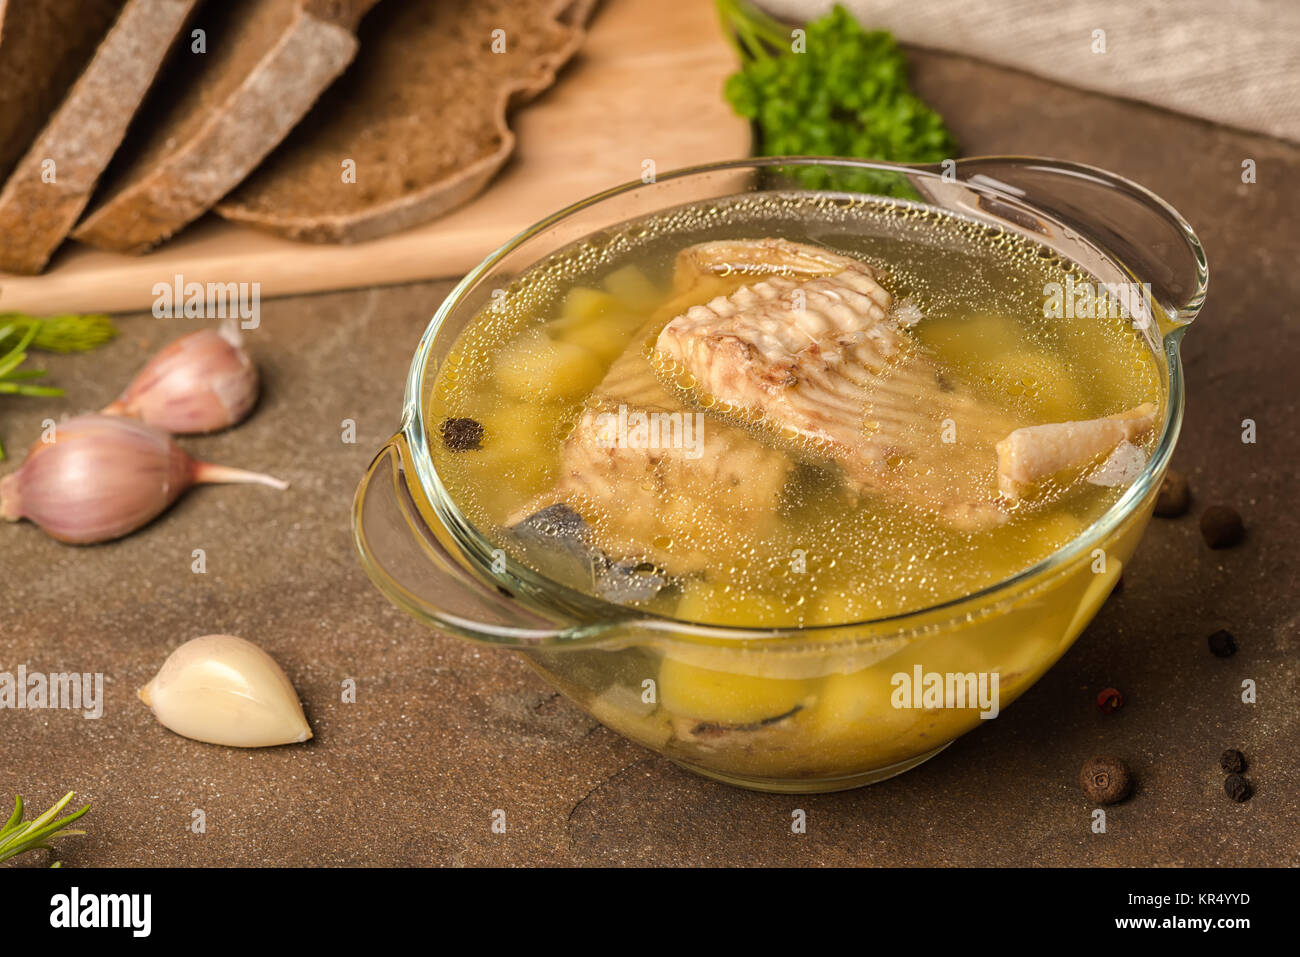 Zuppa di pesce con lo storione, patate in lastra trasparente, decorato di aglio, foglie di prezzemolo e tagliate il pane di segale, uno stile di vita sano Foto Stock